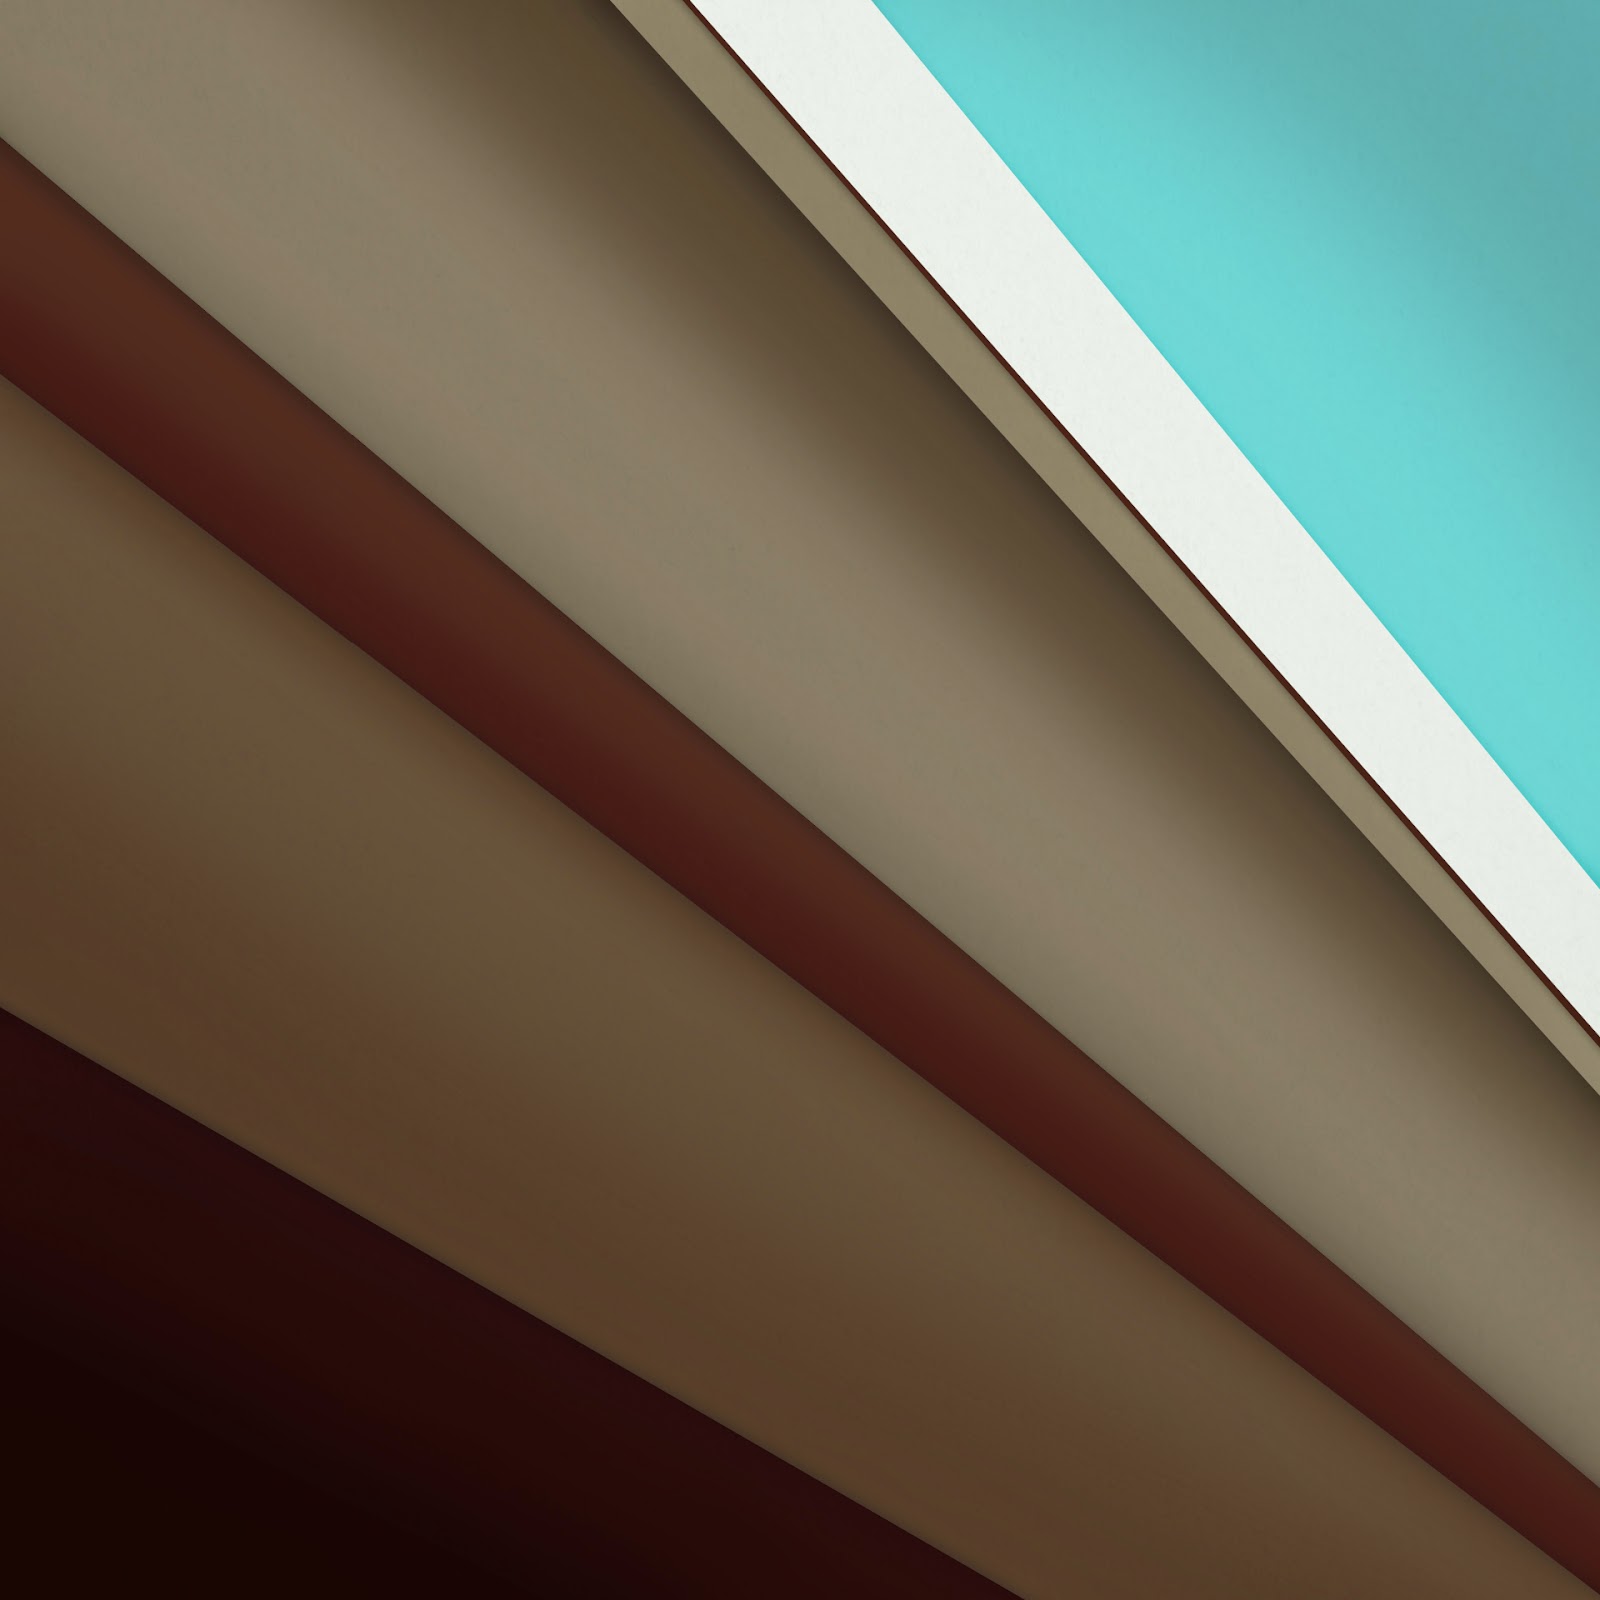 carta da parati warna coklat,linea,soffitto,architettura,legna,tetto